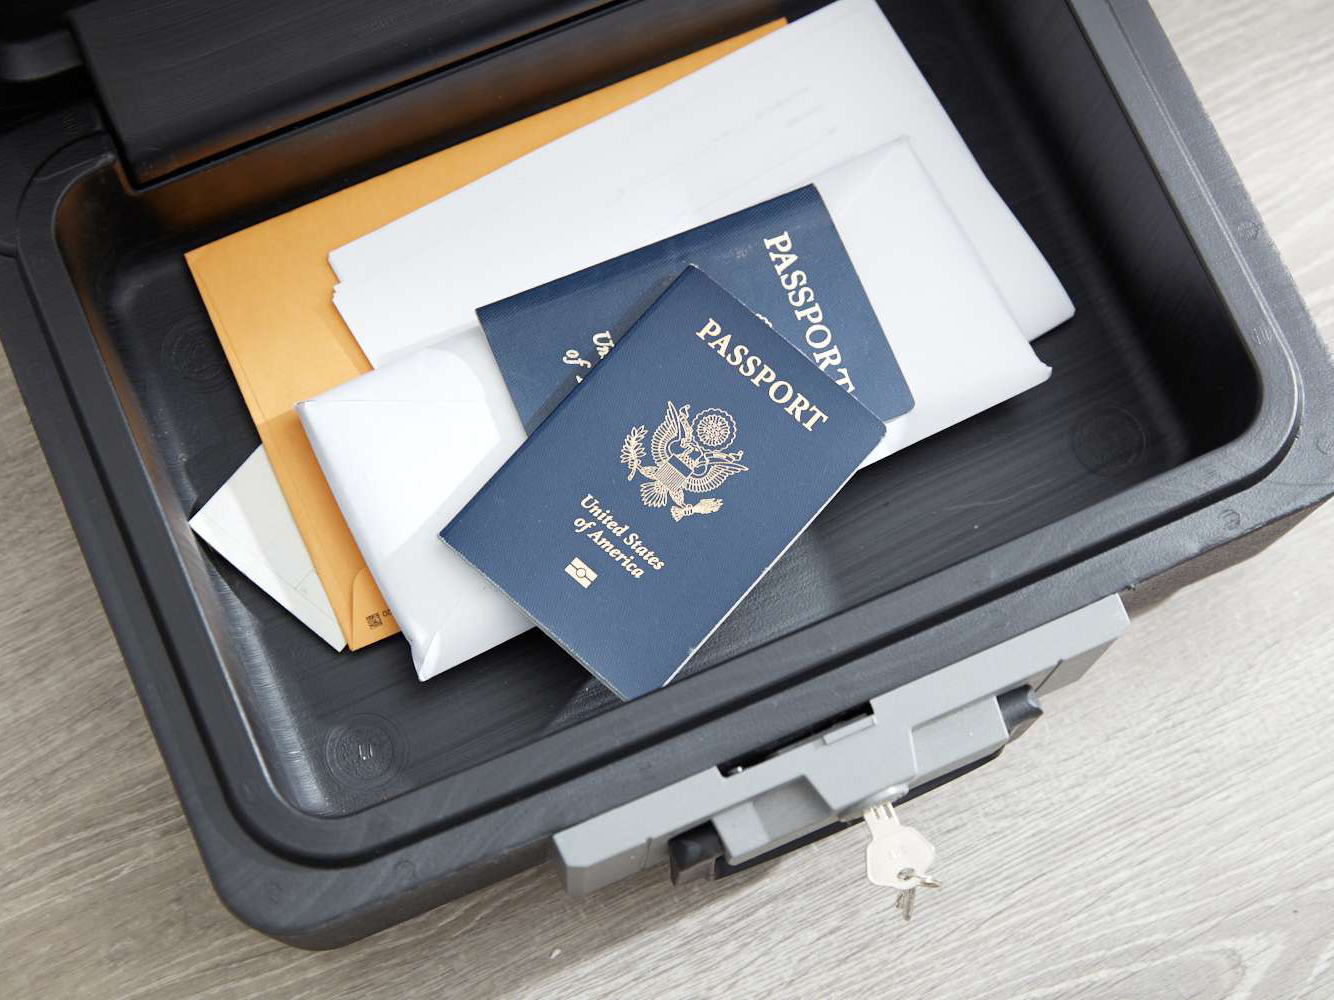 دليل شامل لمقابلة التأشيرة الأمريكية للمقيمين في الإمارات - تنظيم المستندات الخاصة بك